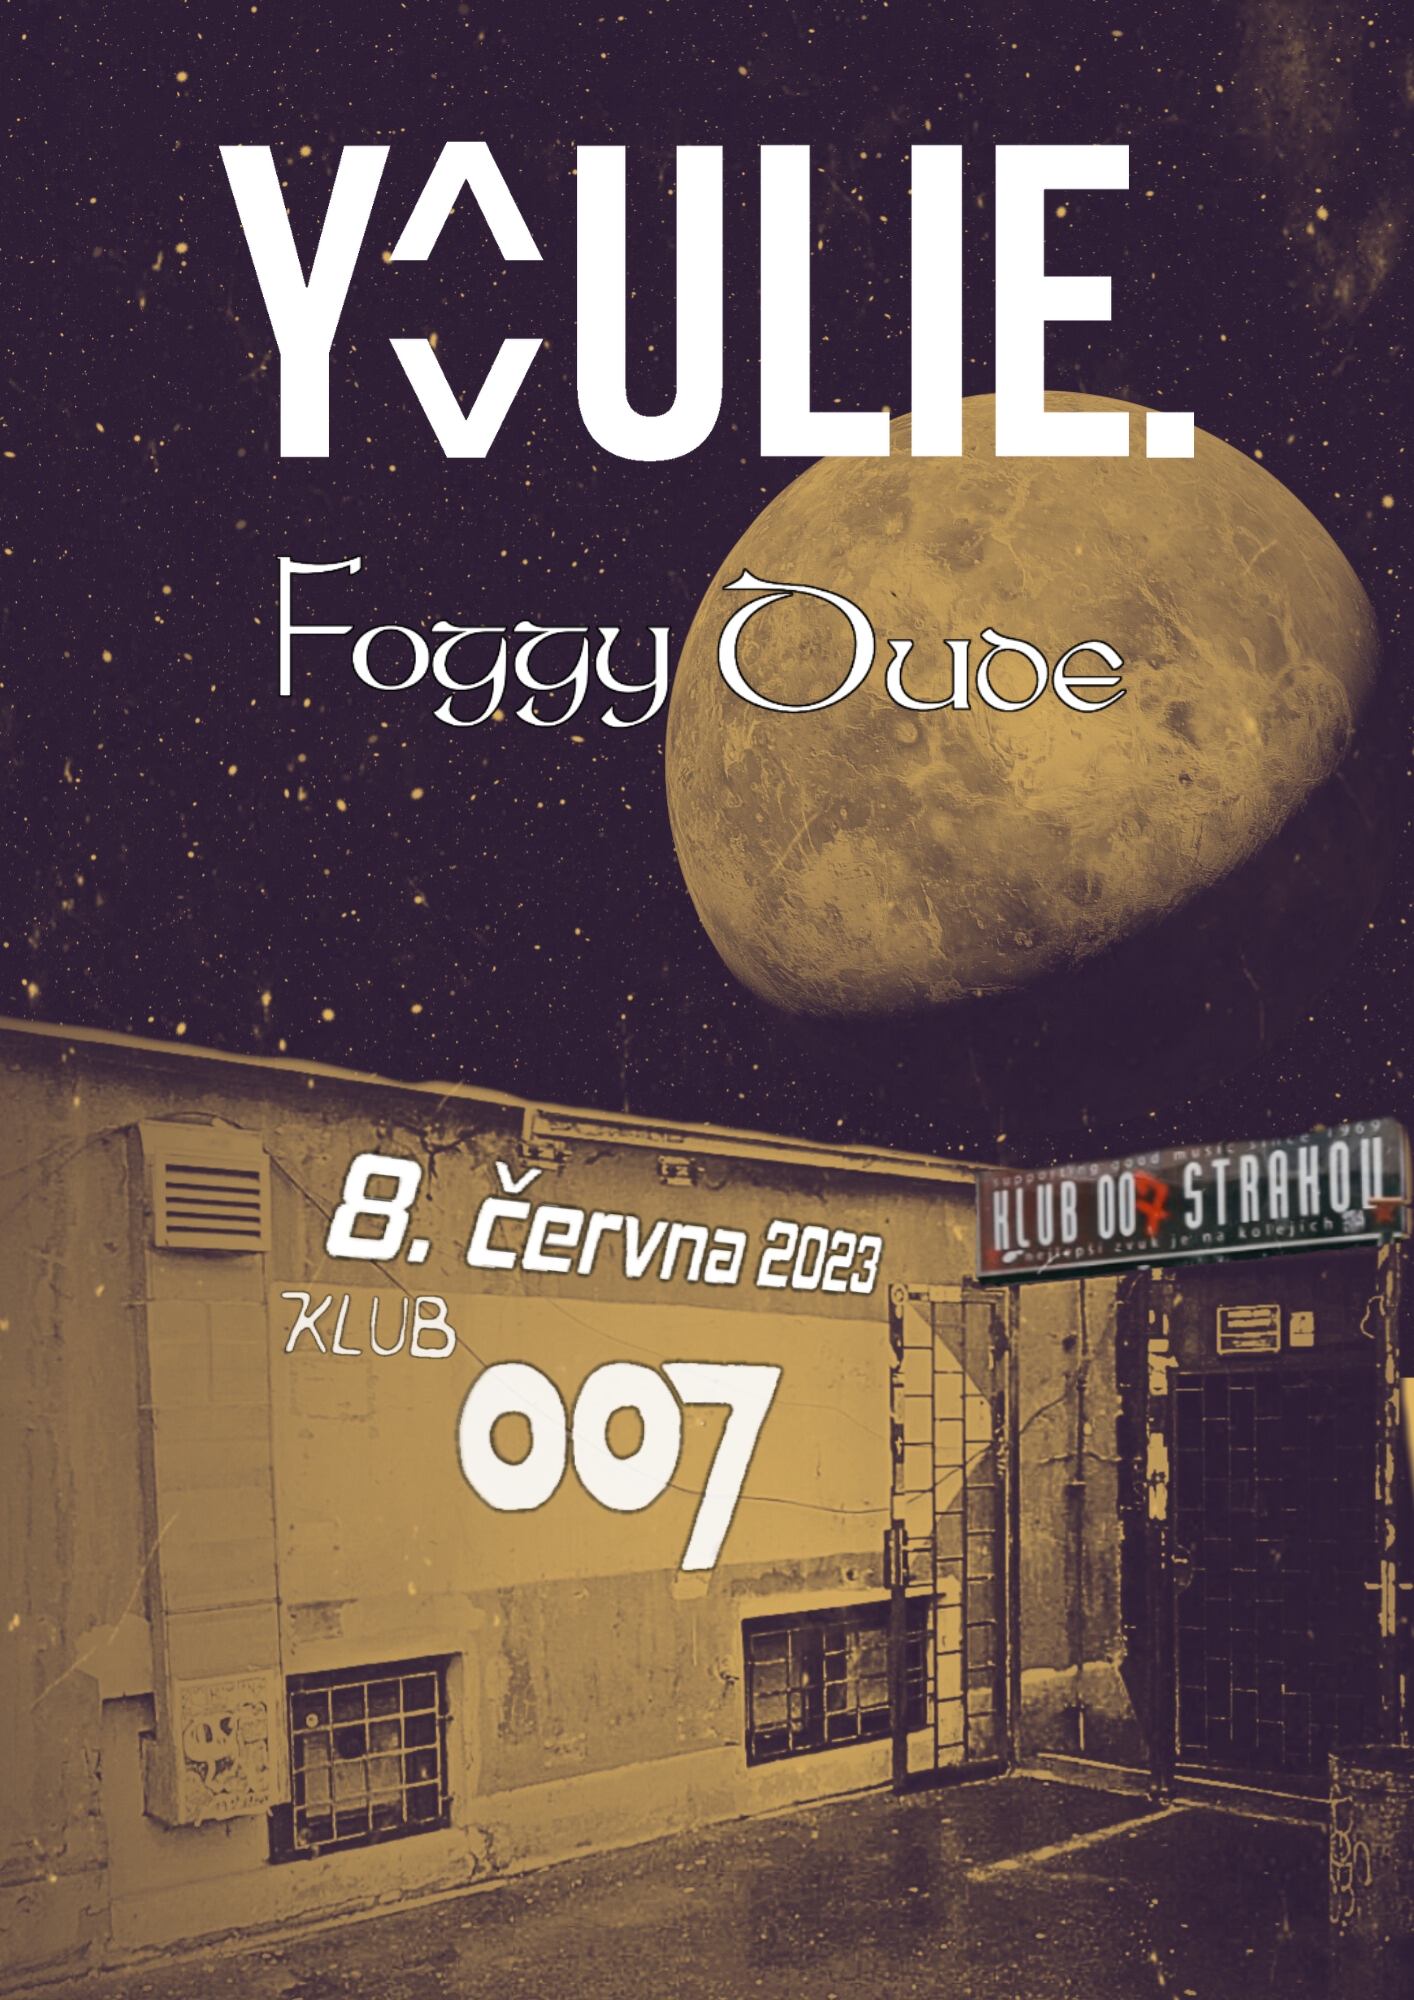 Youlie + Foggy Dude v Klubu 007 -Praha, Klub 007